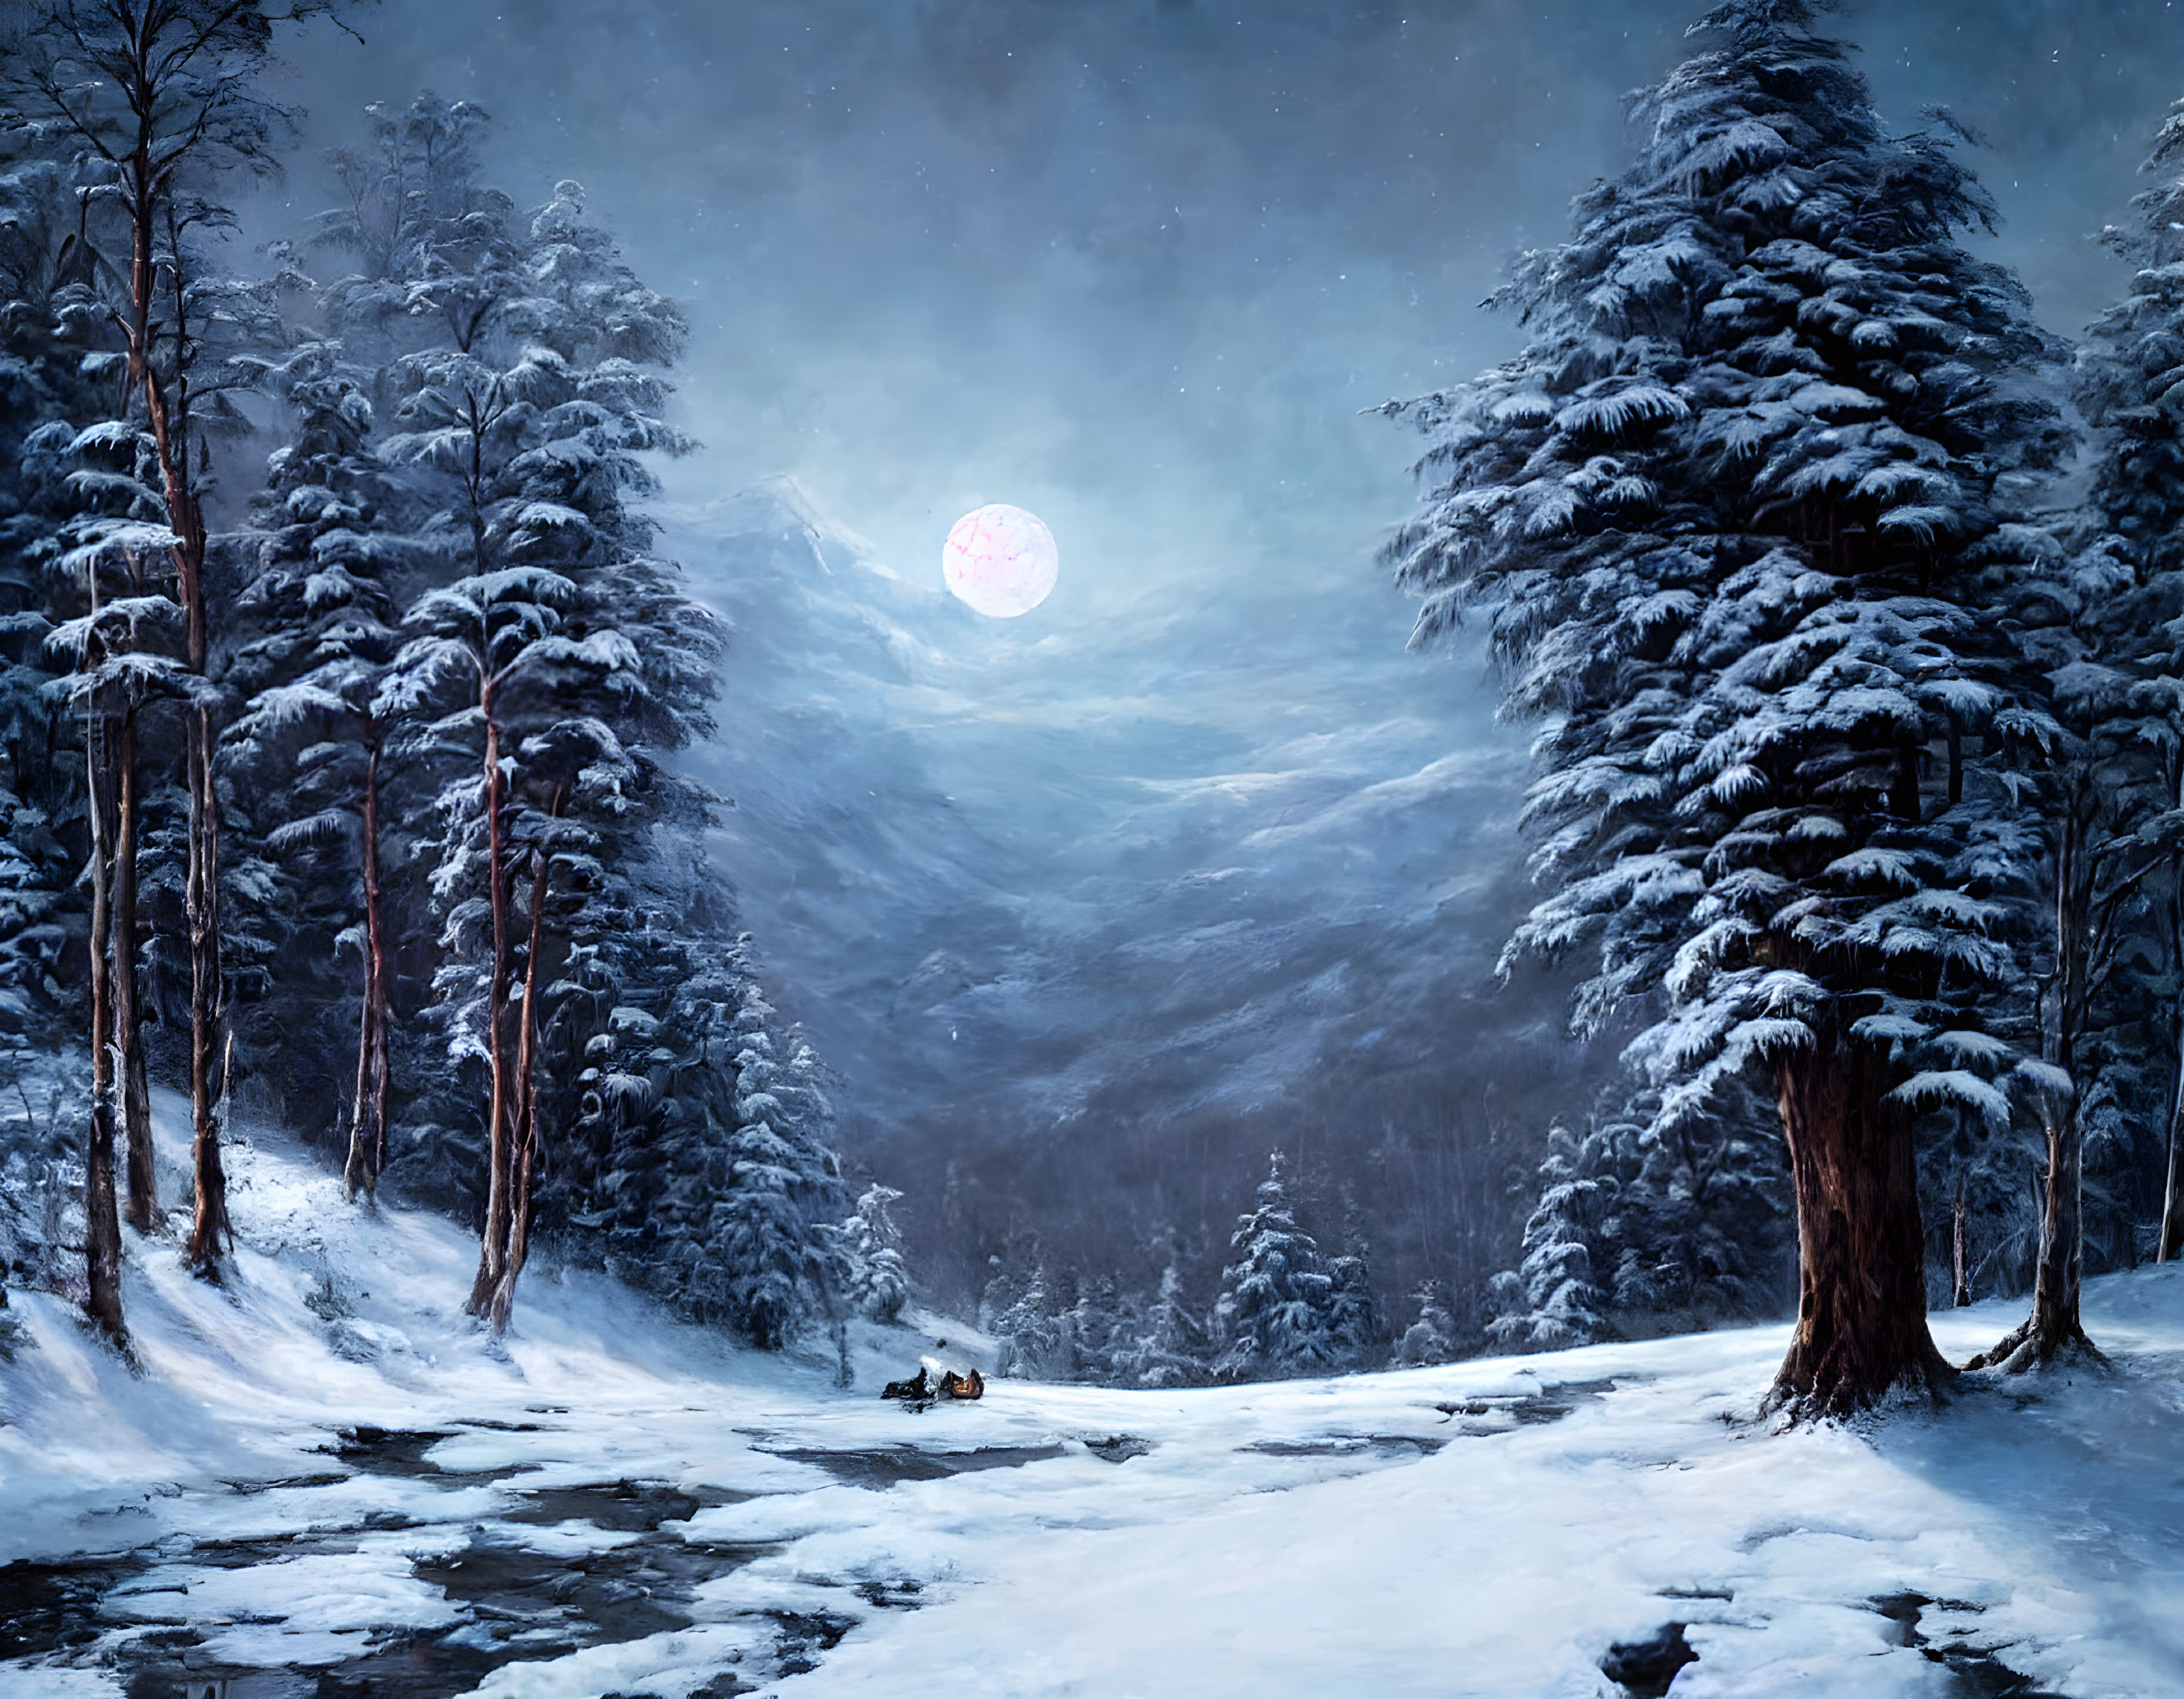 Winter night,in the moonlight